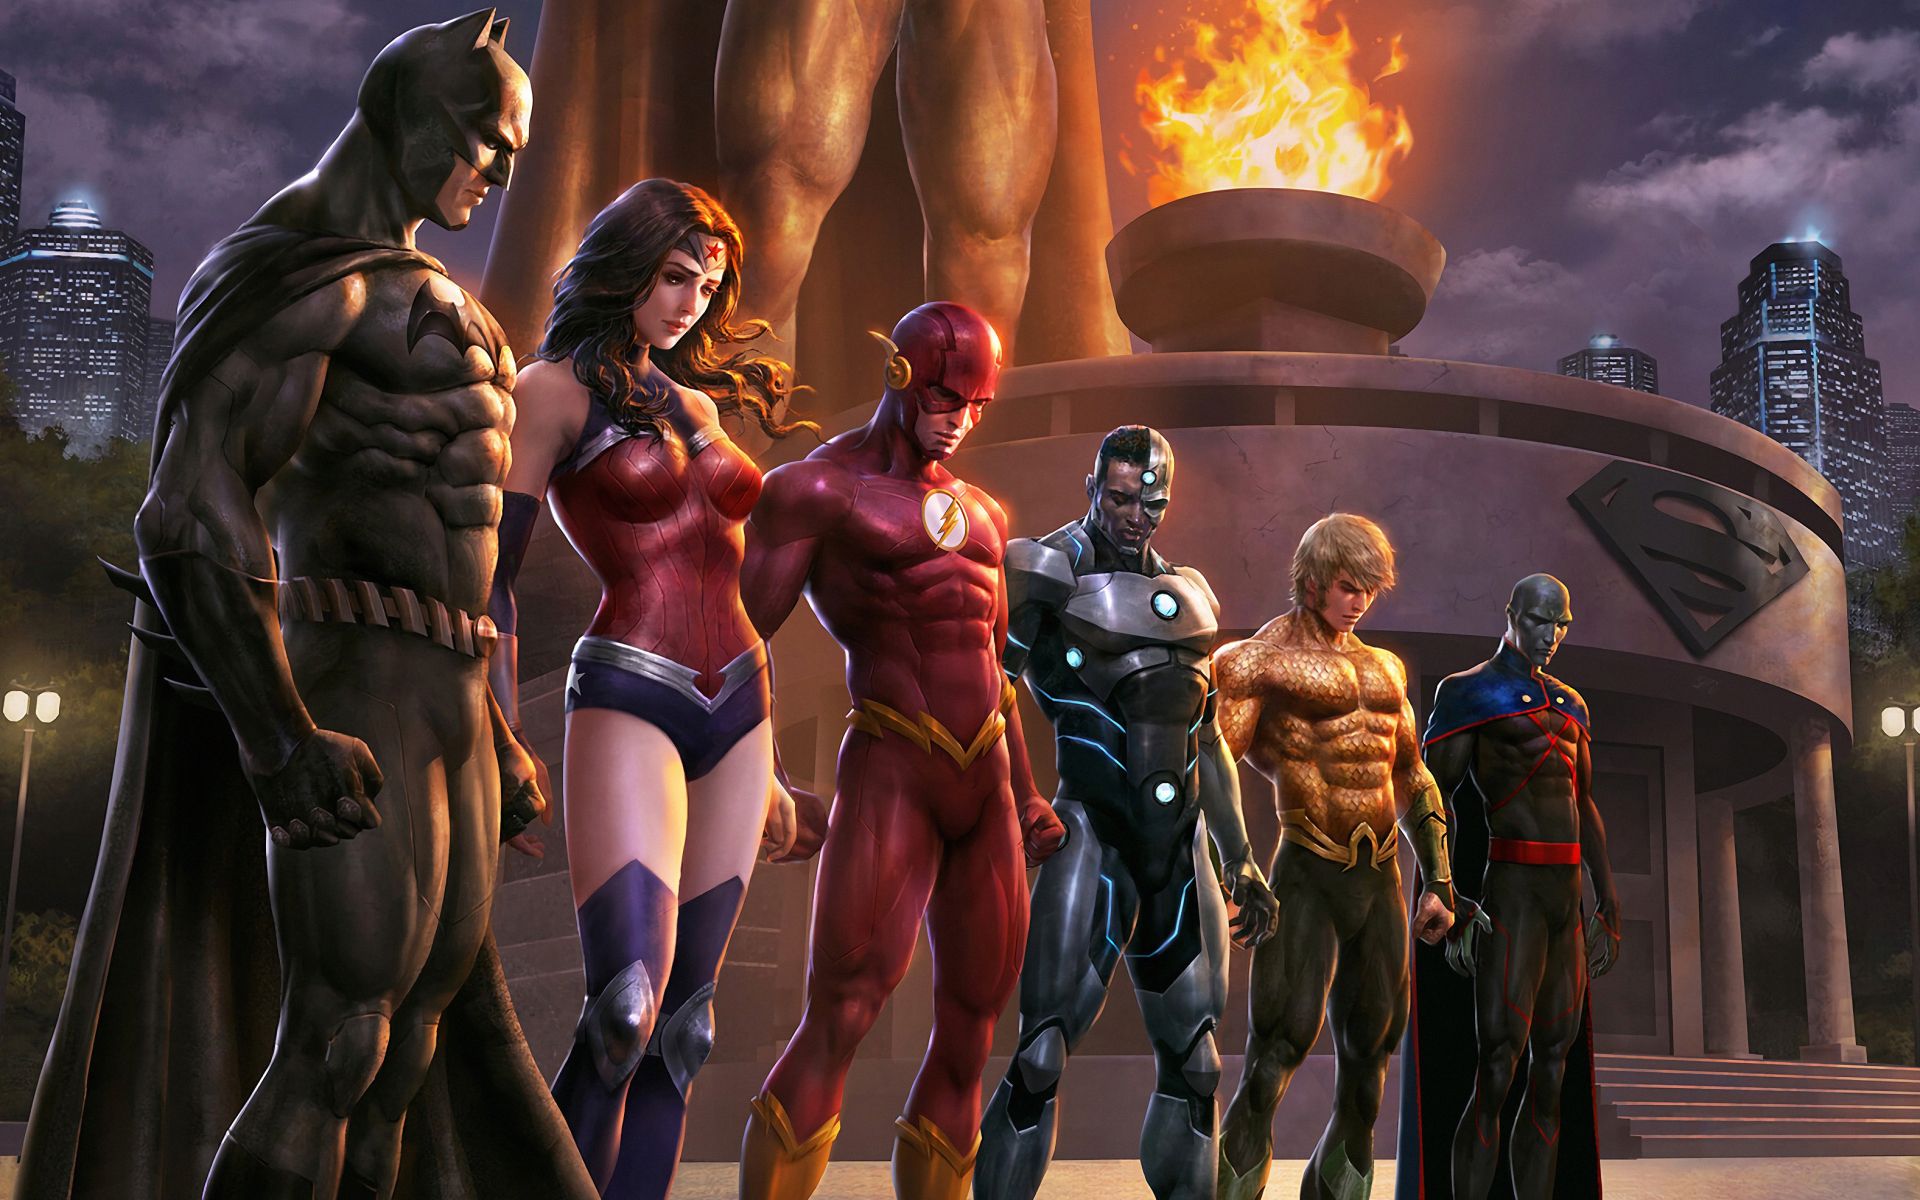 1920x1200 Comics Justice League Dc Comics Batman Wonder Woman Flash Cyborg Aquaman Martian Manhunter Hd Wallpaper